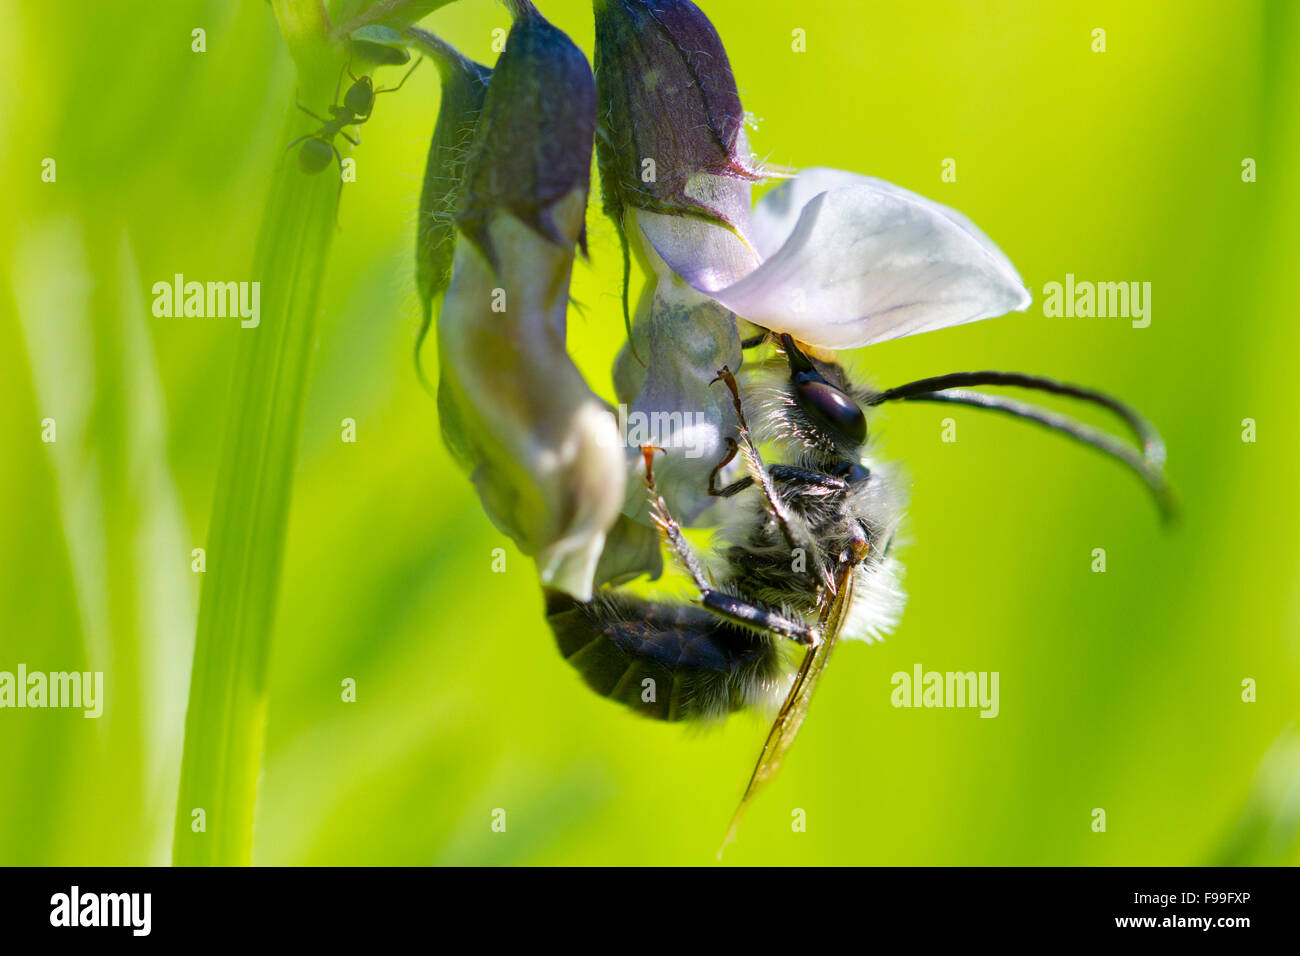 Le longicorne Bee (Eucera sp.) mâle adulte se nourrissant d'un buisson (Vicia sepium vesce) fleur. Ariege Pyrenees, France. De juin. Banque D'Images